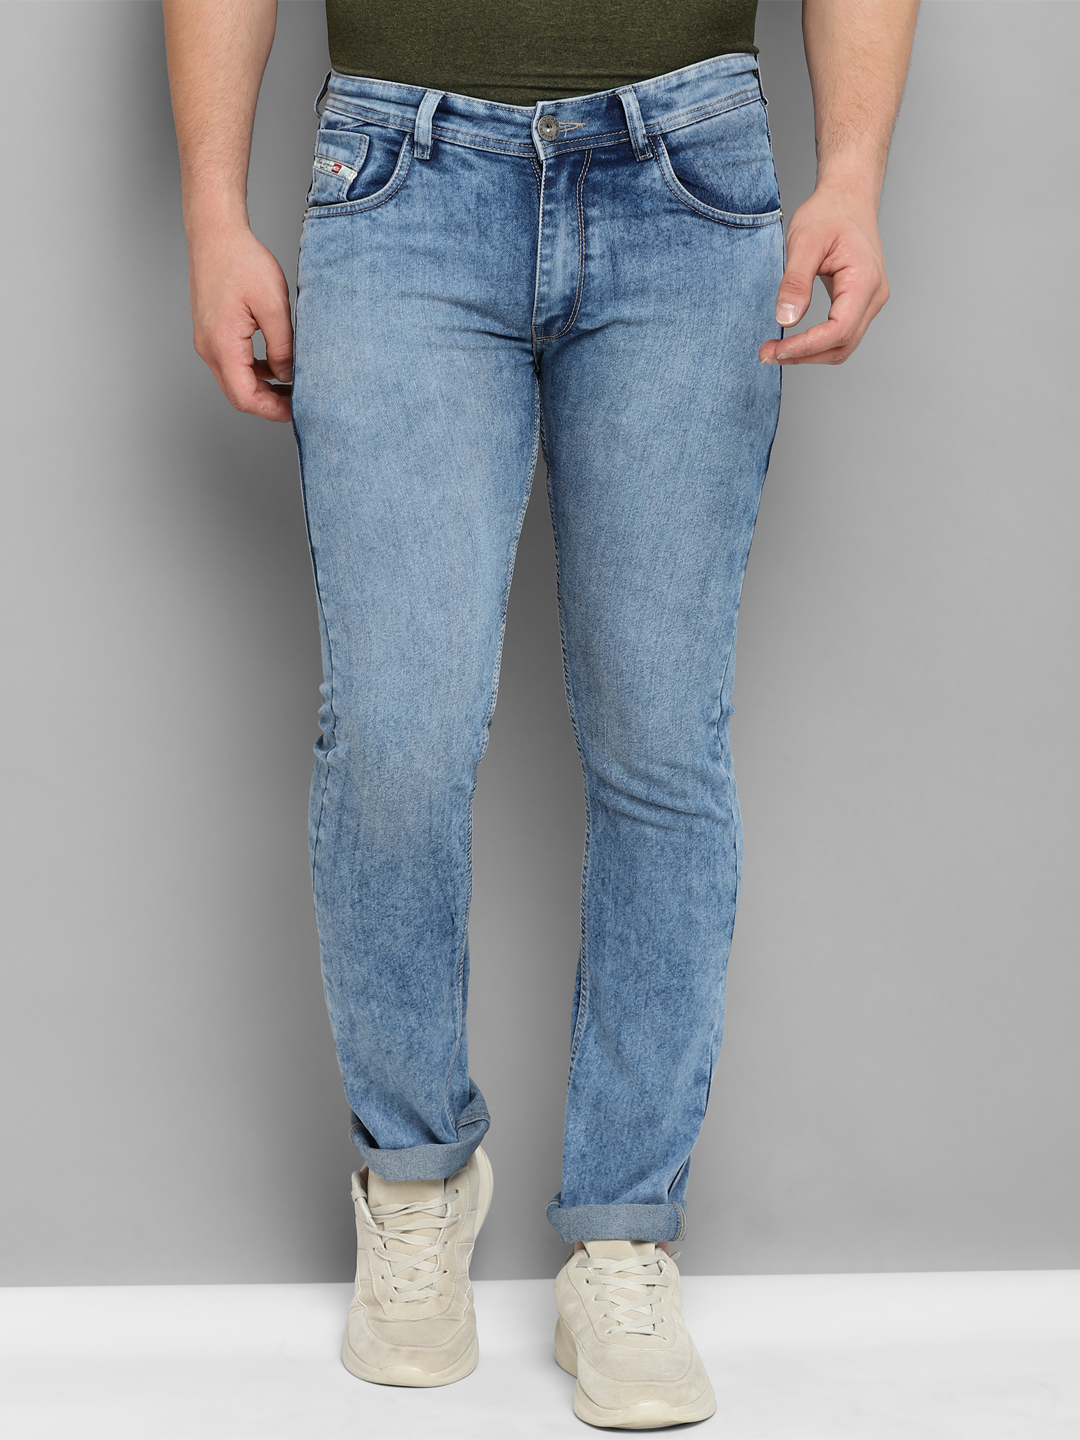 Allen Cooper Denim Jeans For Men - Allen Cooper | Most Comfortable ...